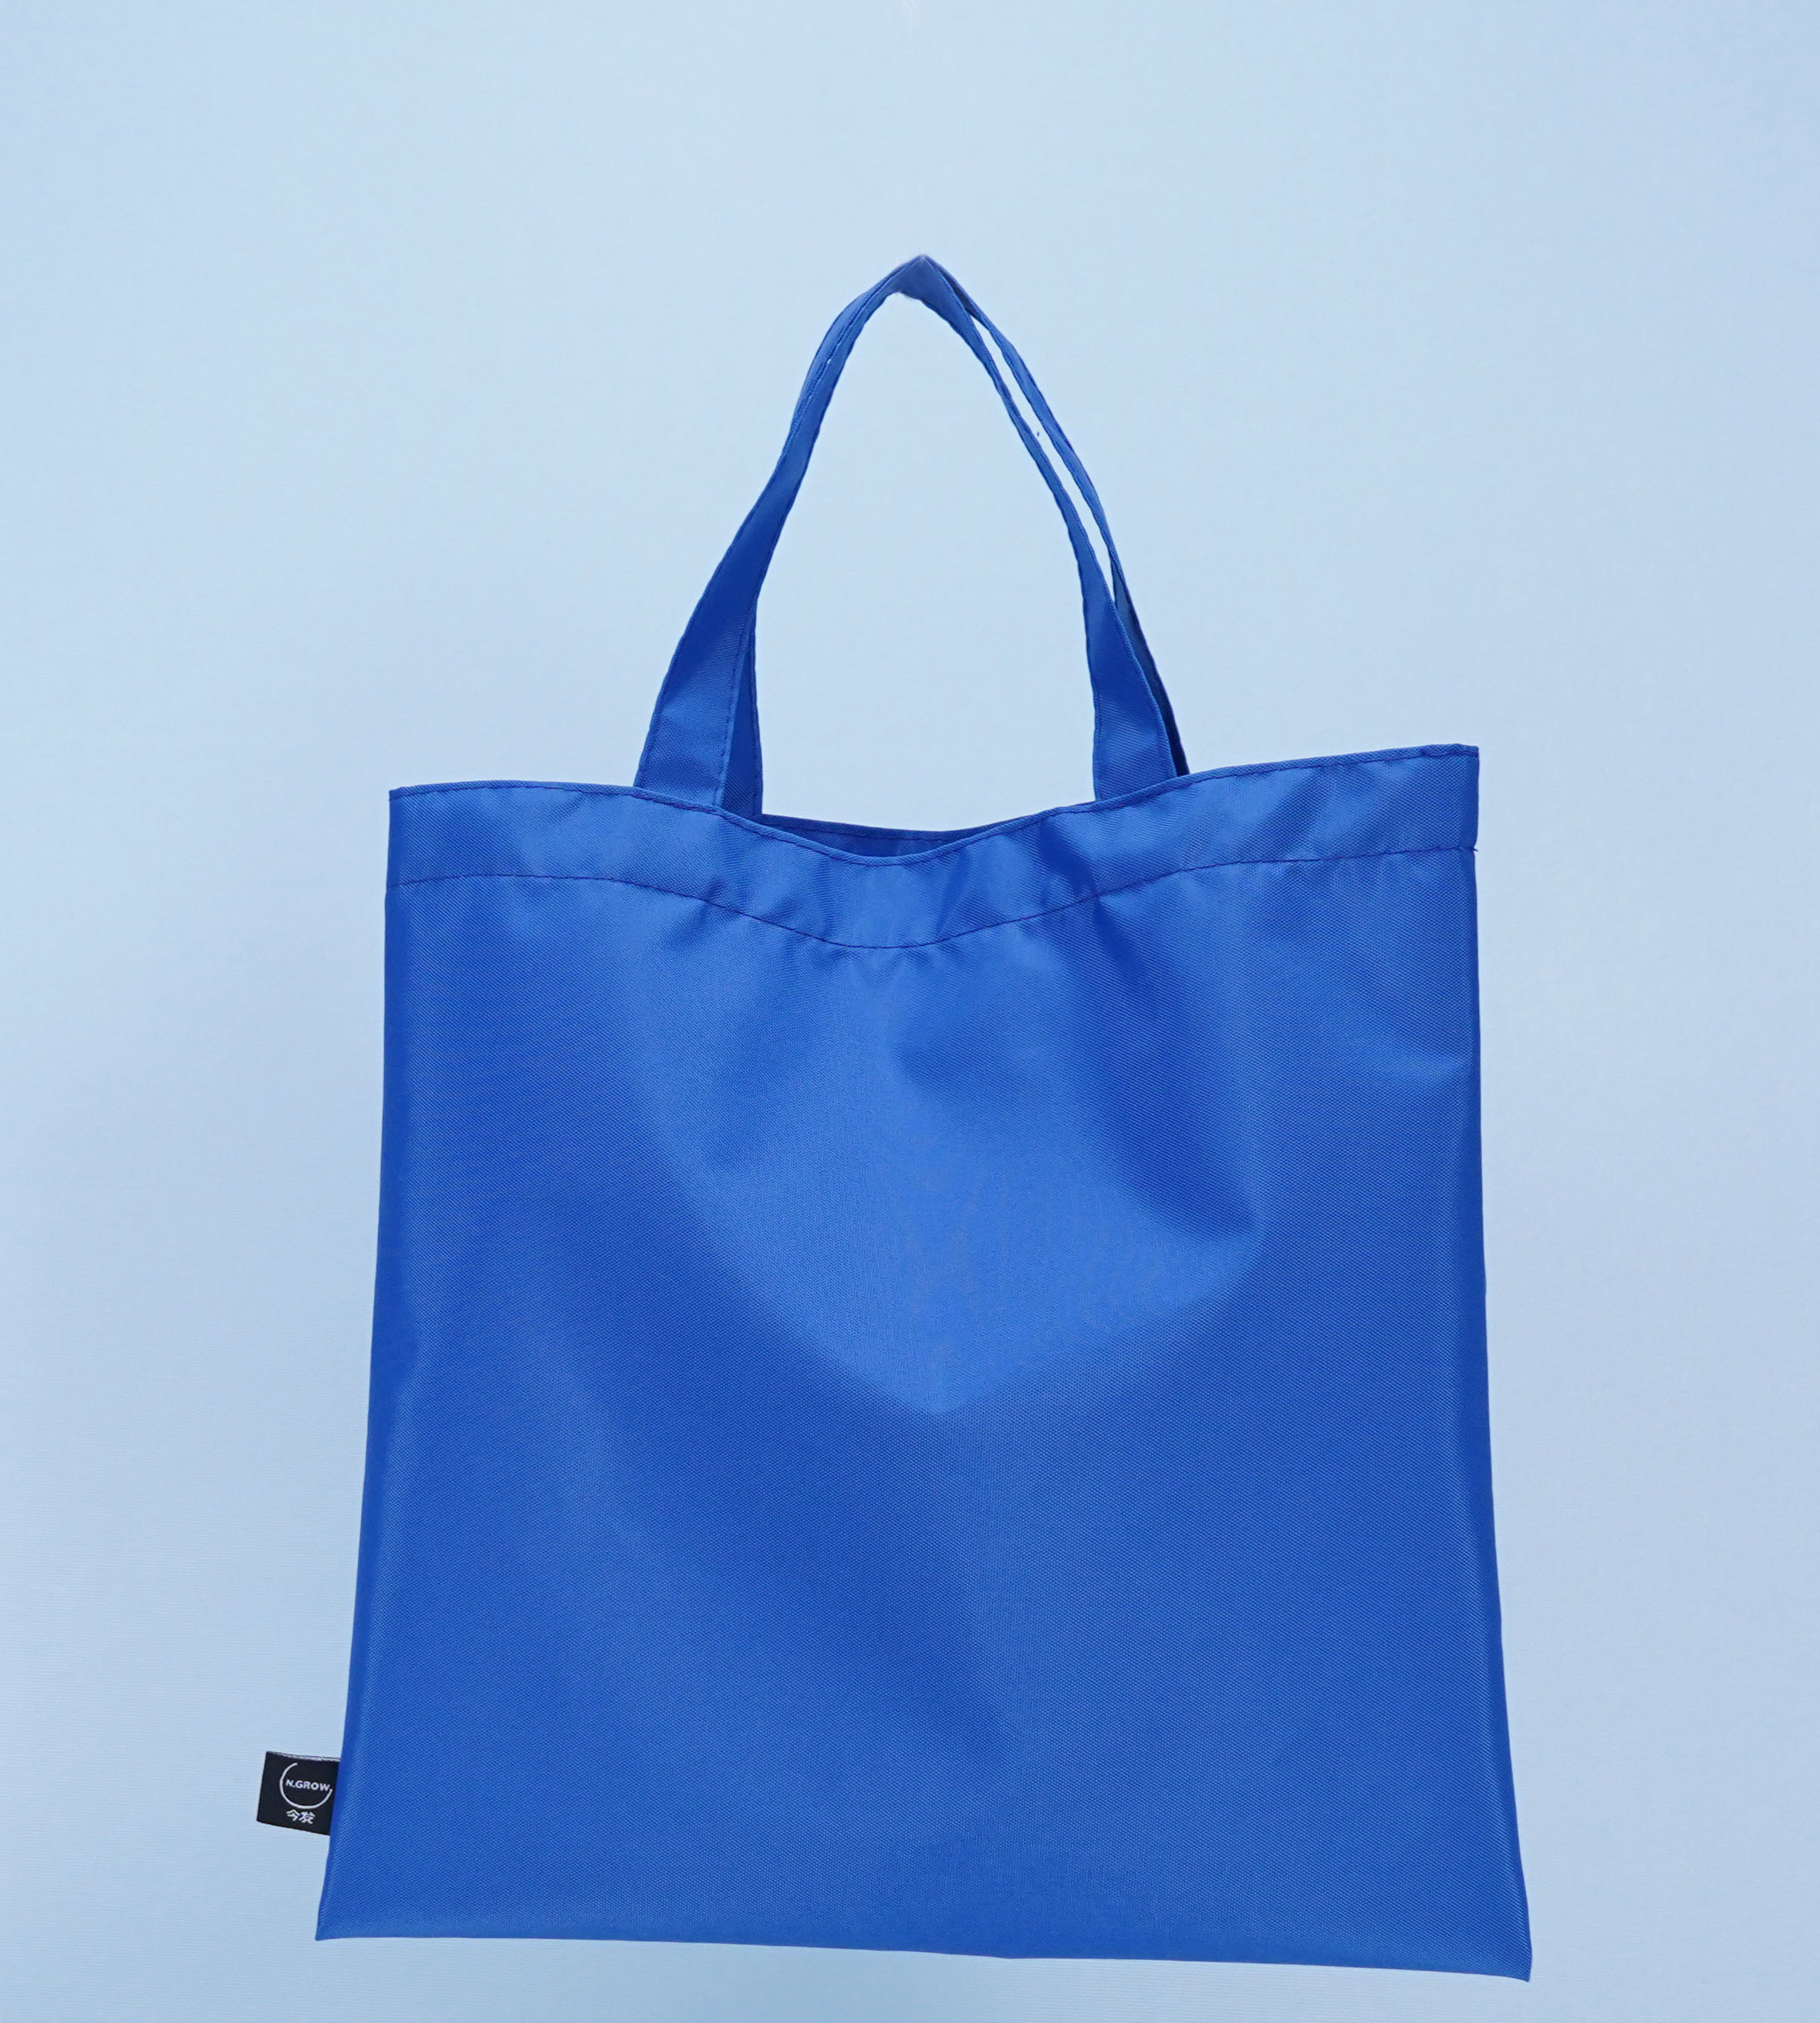 सुविधा के लिए डिज़ाइन किया गया: एक अनुकूलन योग्य नायलॉन पॉलिएस्टर टोट बैग के साथ अपने जीवन को सरल बनाएं